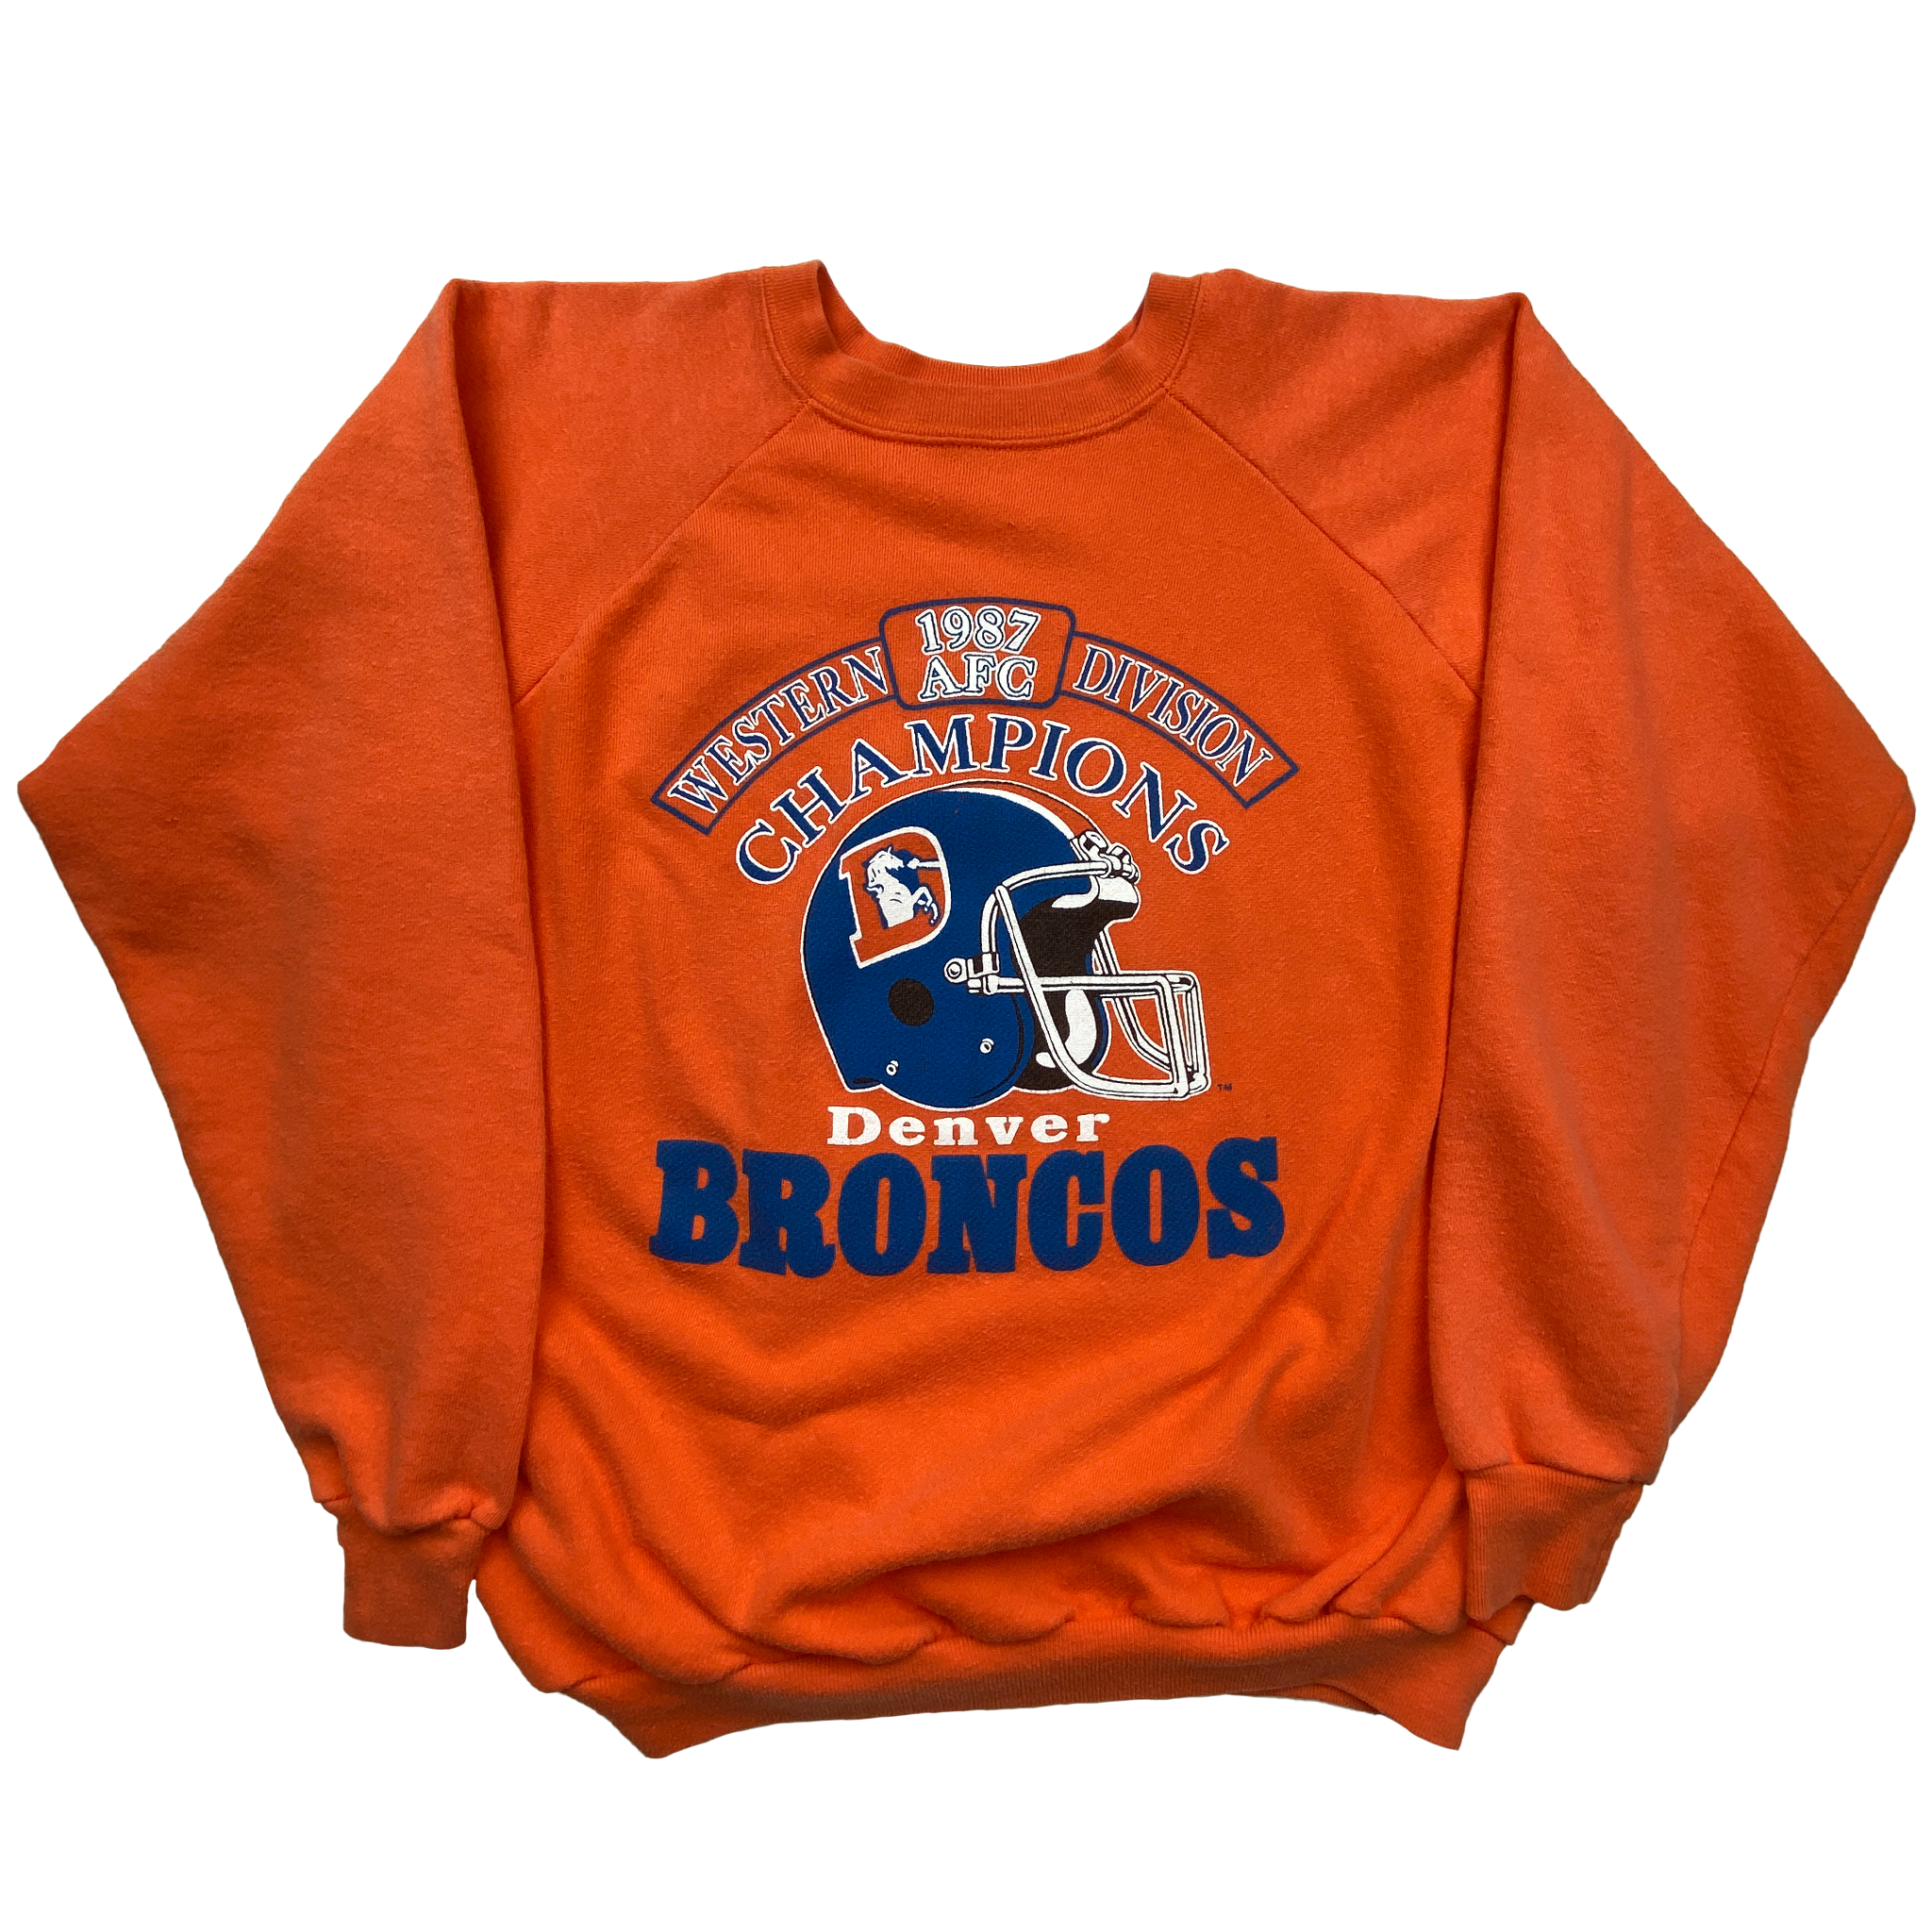 Denver Broncos Sweater (M)